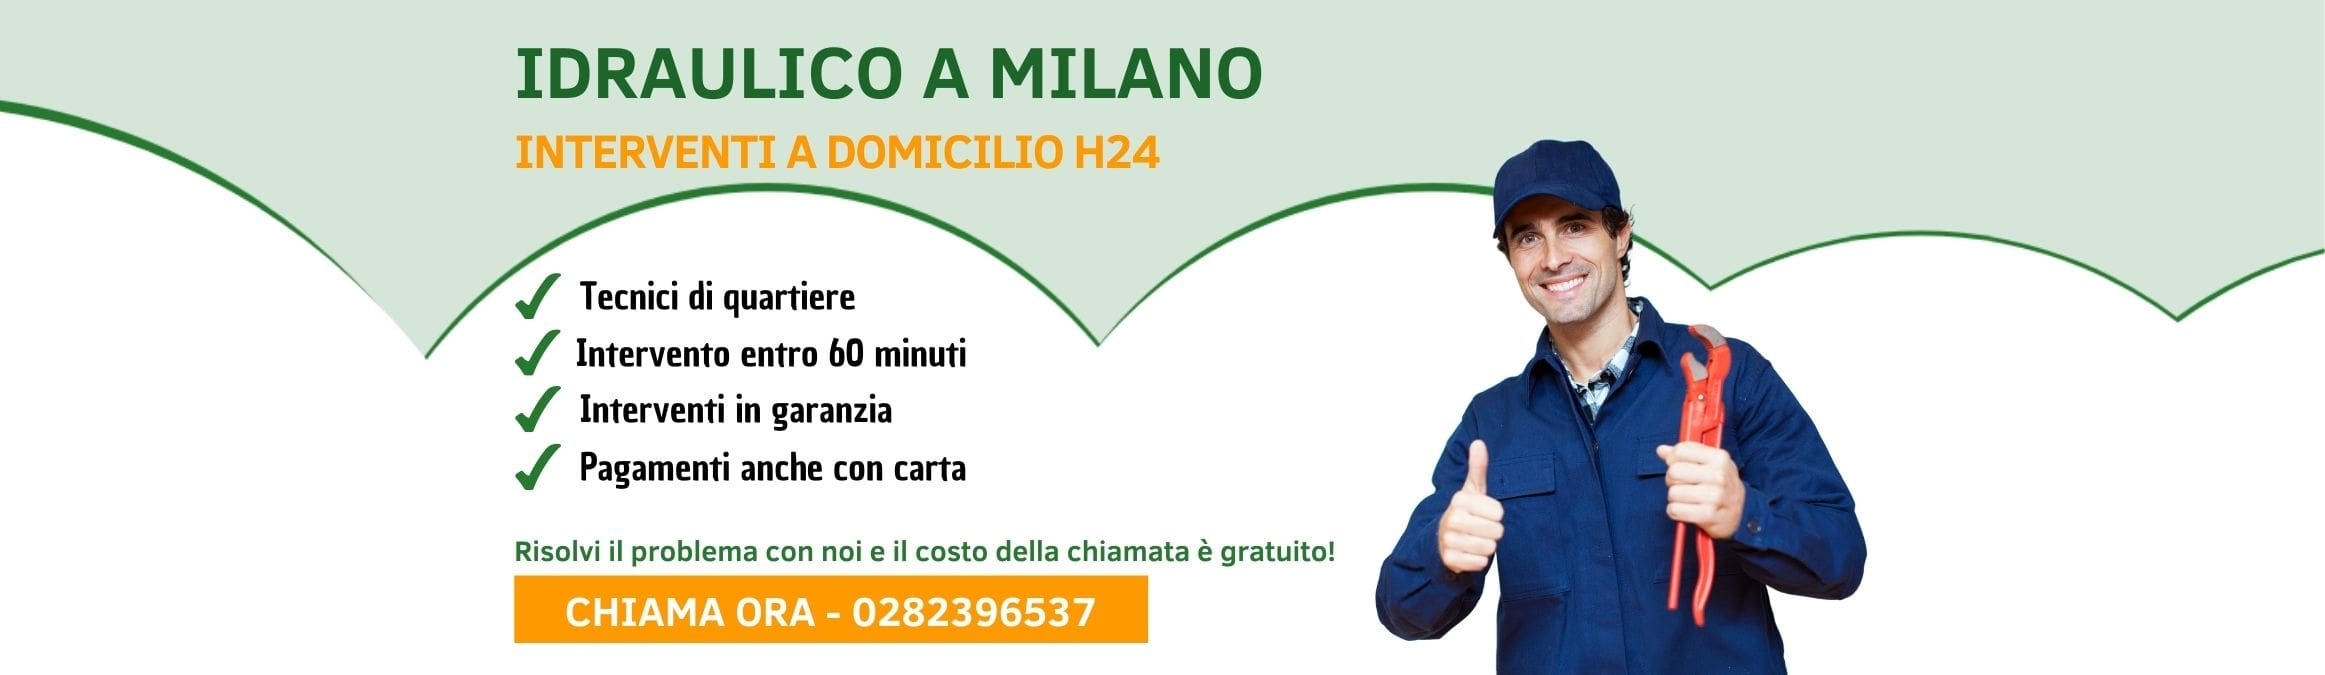 Idraulico Milano Pronto Intervento h24